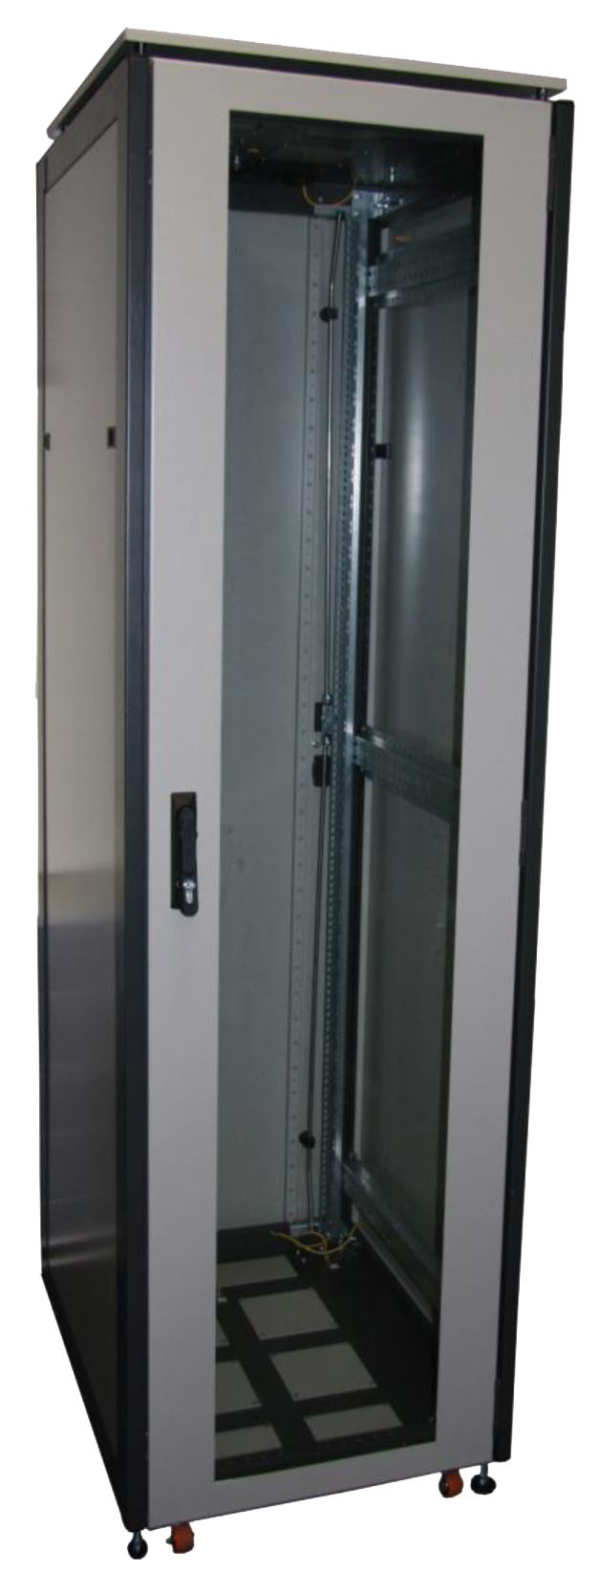 ССКТБ ТОМАСС ШТК-8620Э-00 - шкаф телекоммуникационный 19", 42U, 800х600х2000 мм, с металлической и стеклянной дверью